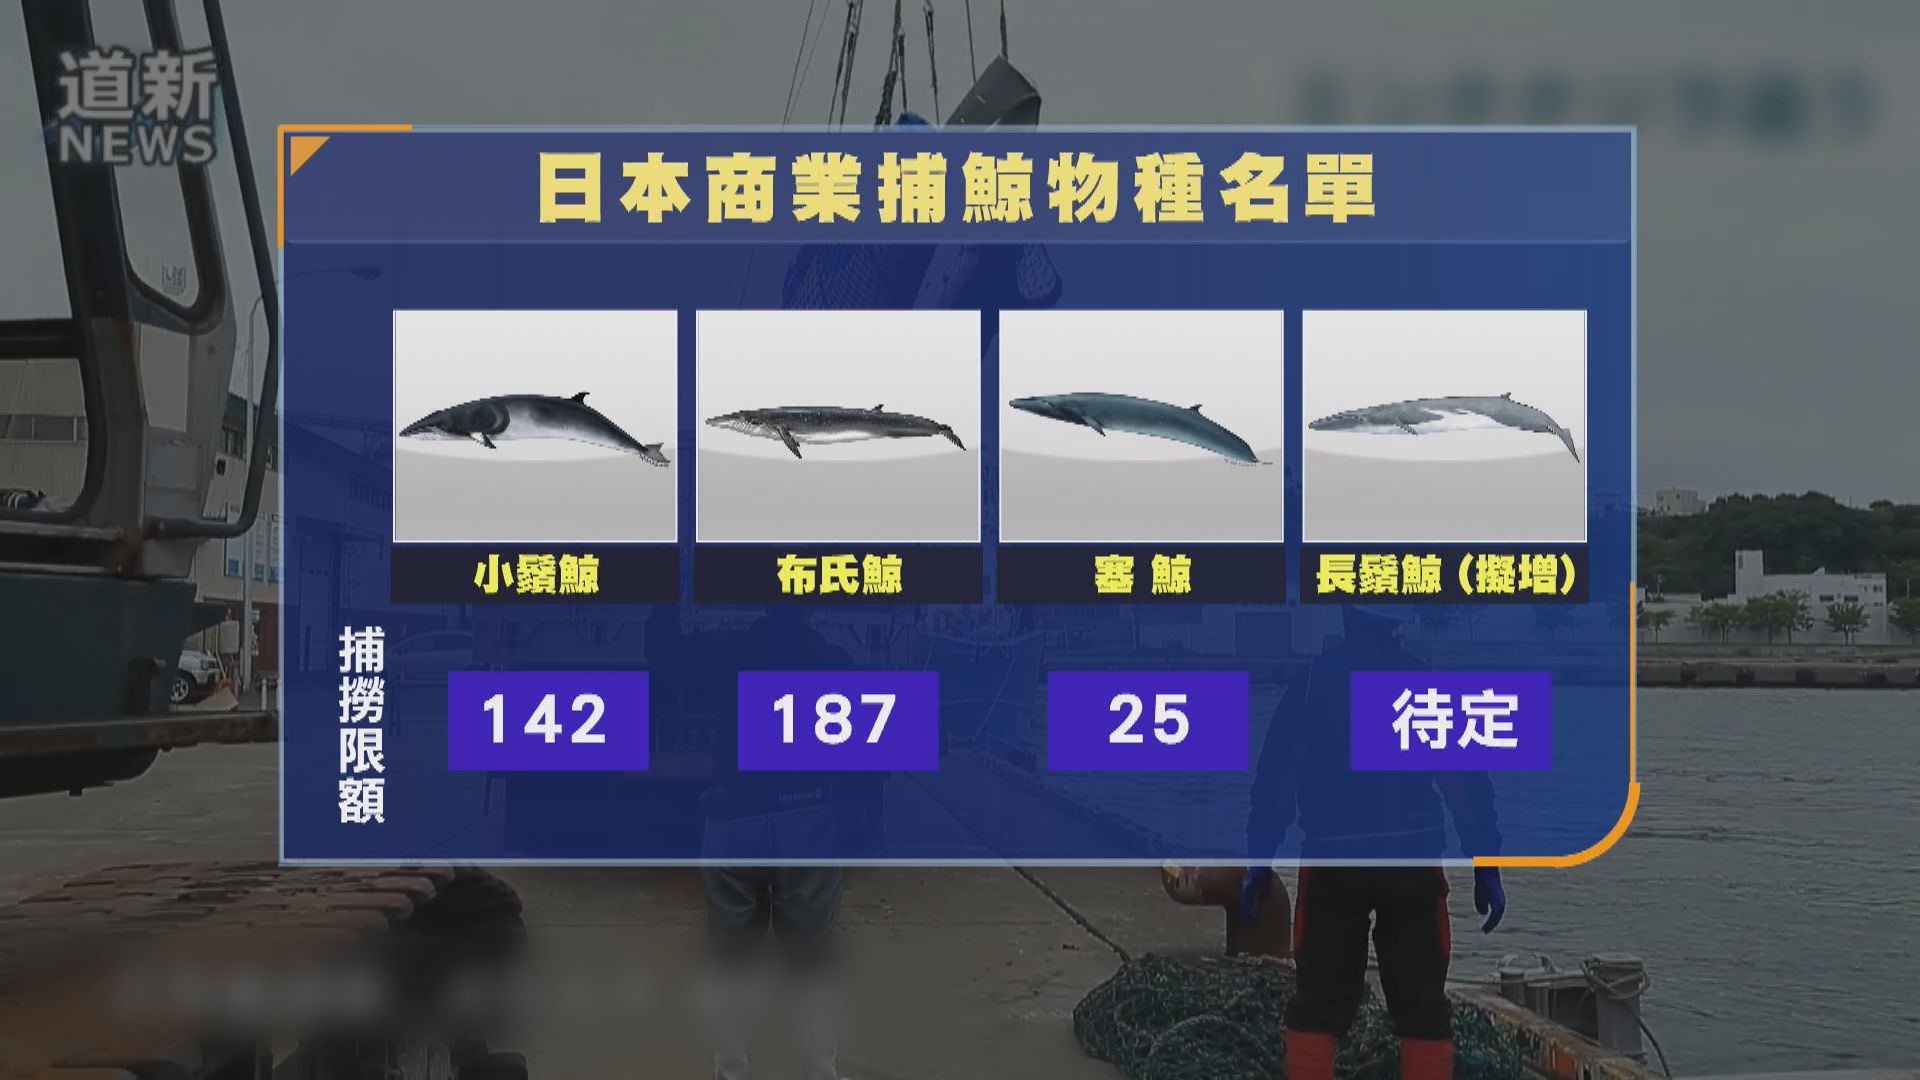 日本擬將長鬚鯨列入商業捕鯨名單